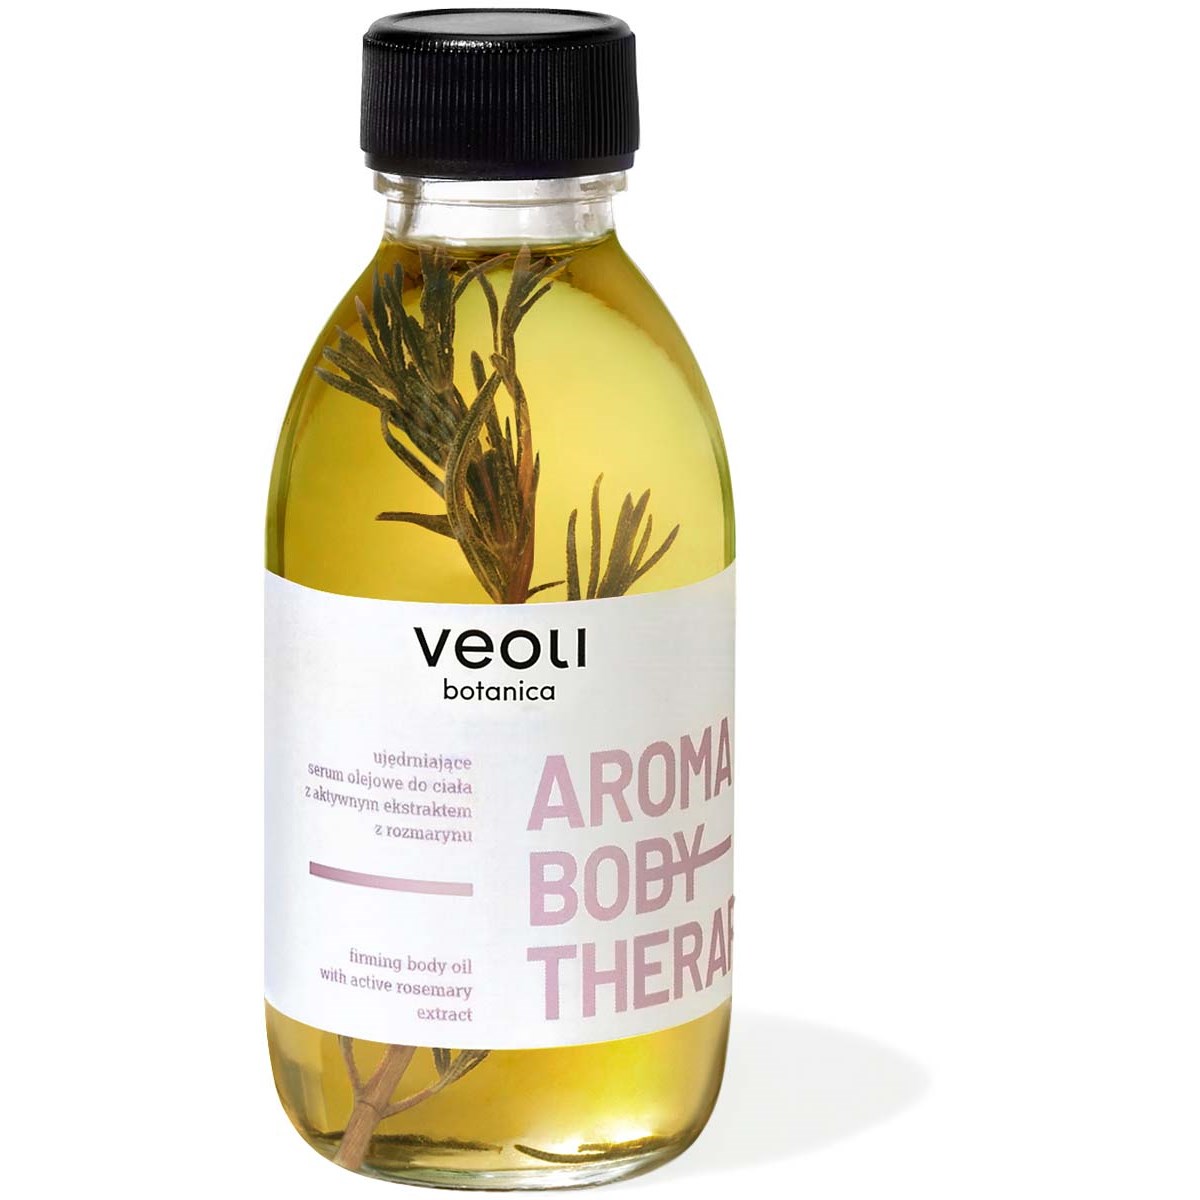 Läs mer om Veoli Botanica Basic Aroma body tharapy 136 g